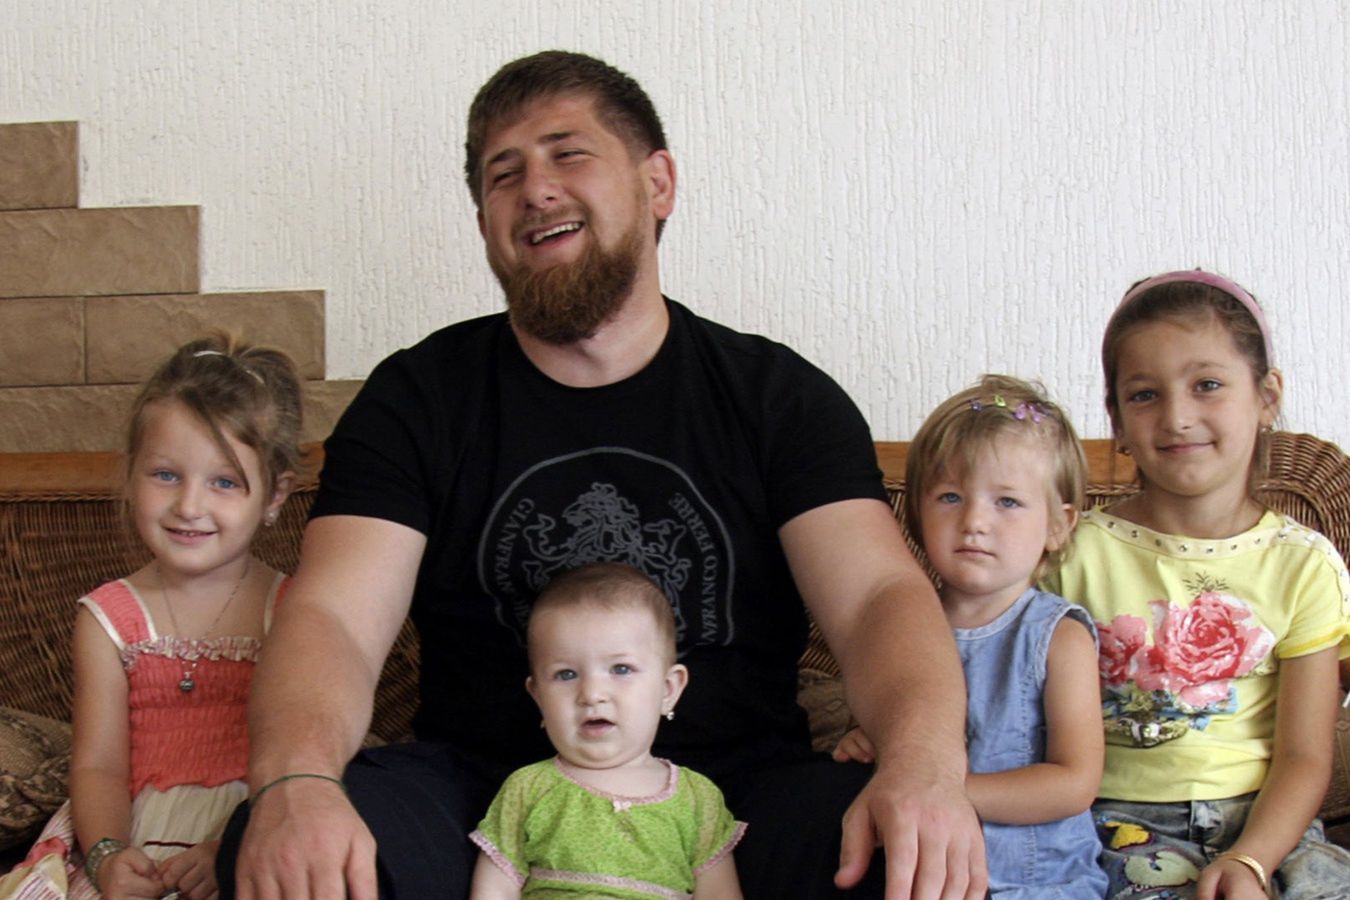 Czym zajmują się potomkowie Kadyrowa? Lider Czeczenii ma 12 dzieci